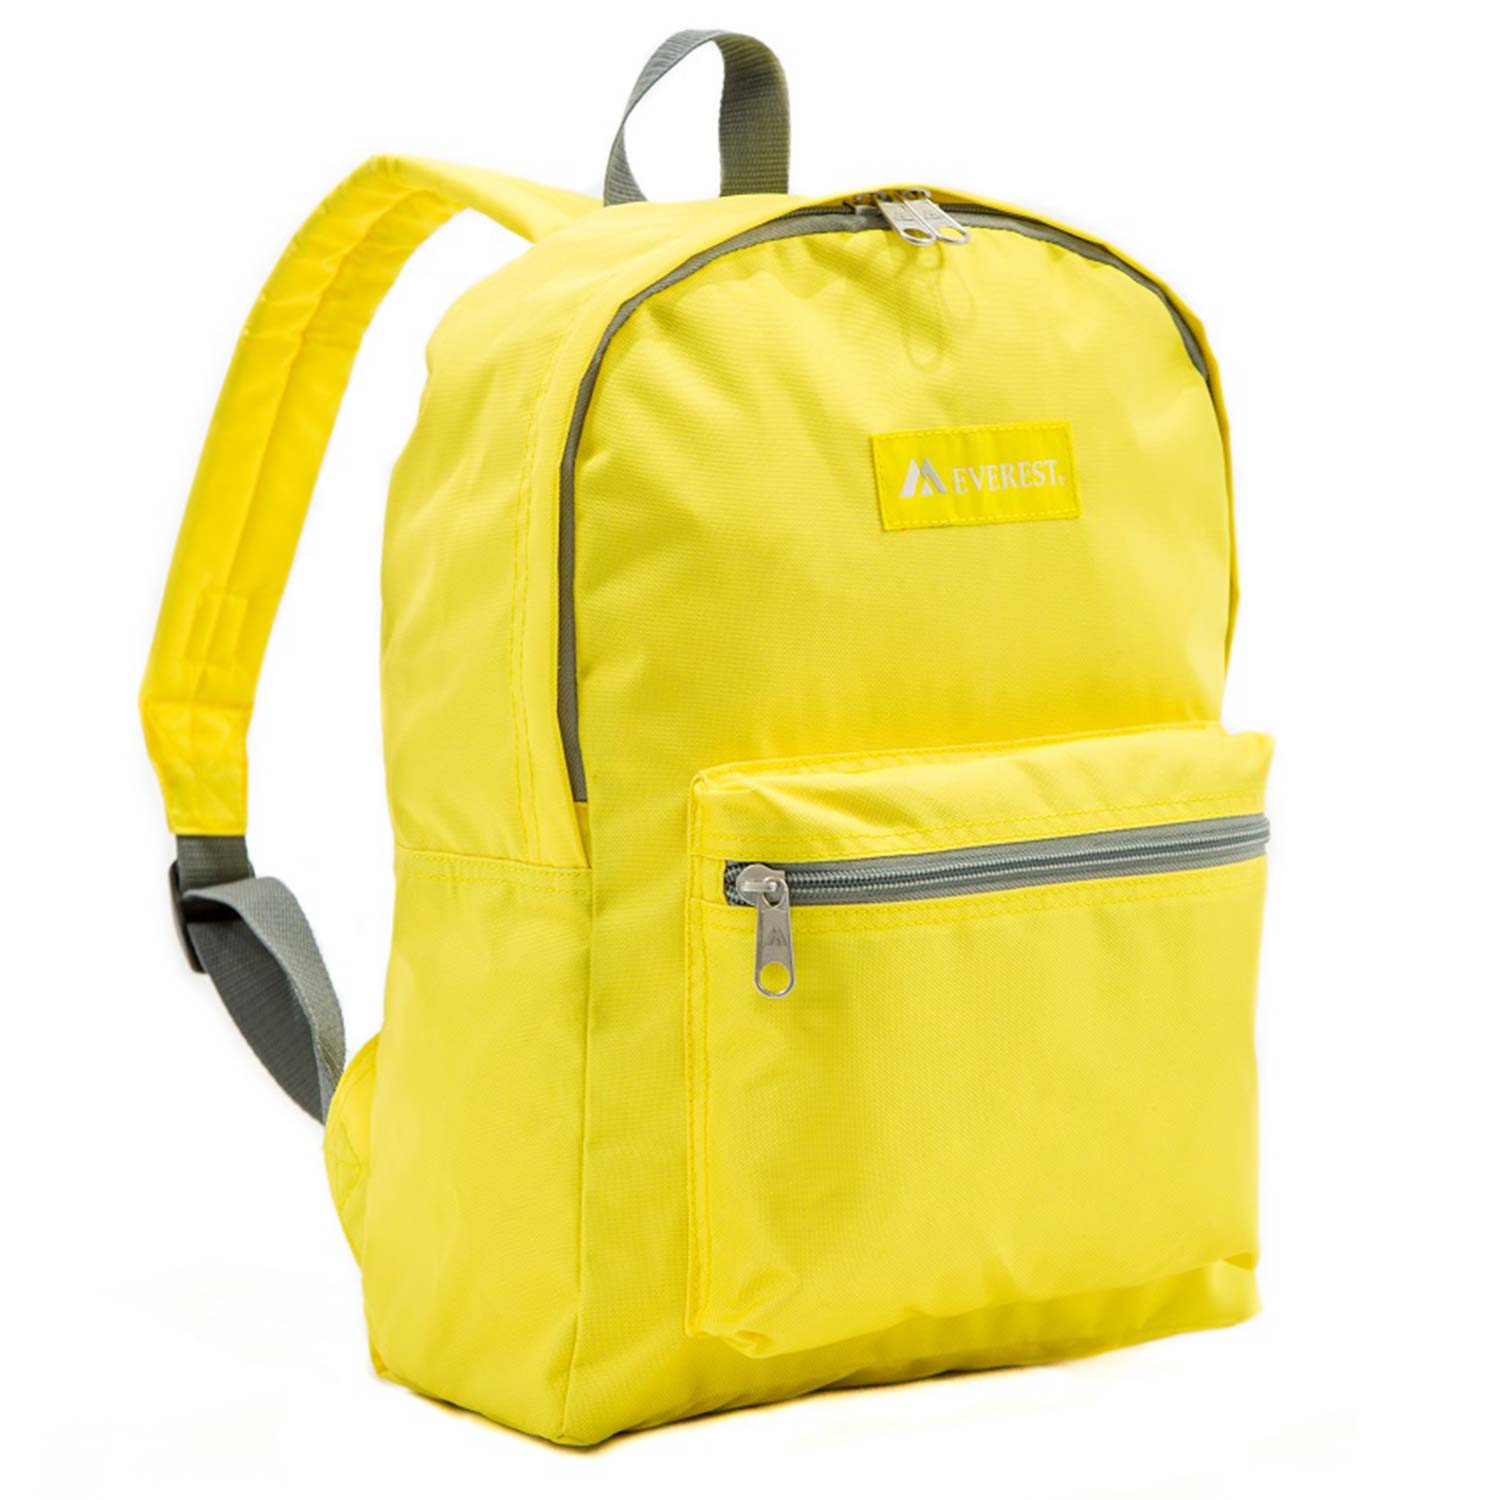 Everest Basic Backpack in Lemon